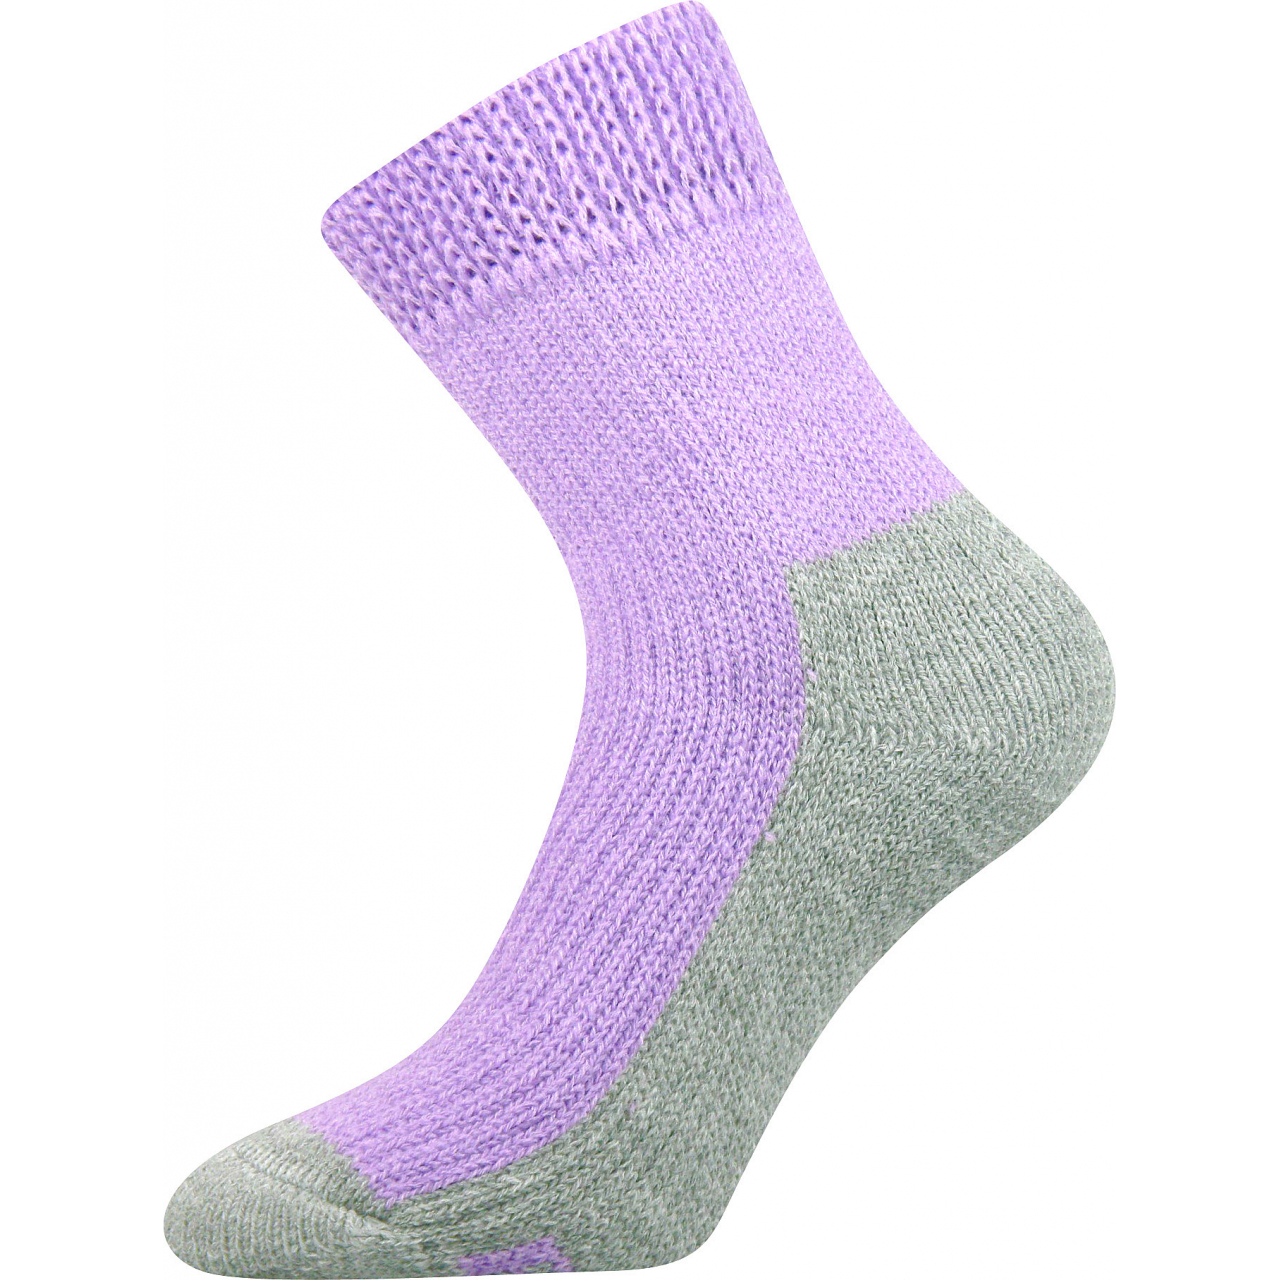 Ponožky unisex Boma Spací - světle fialové, 39-42